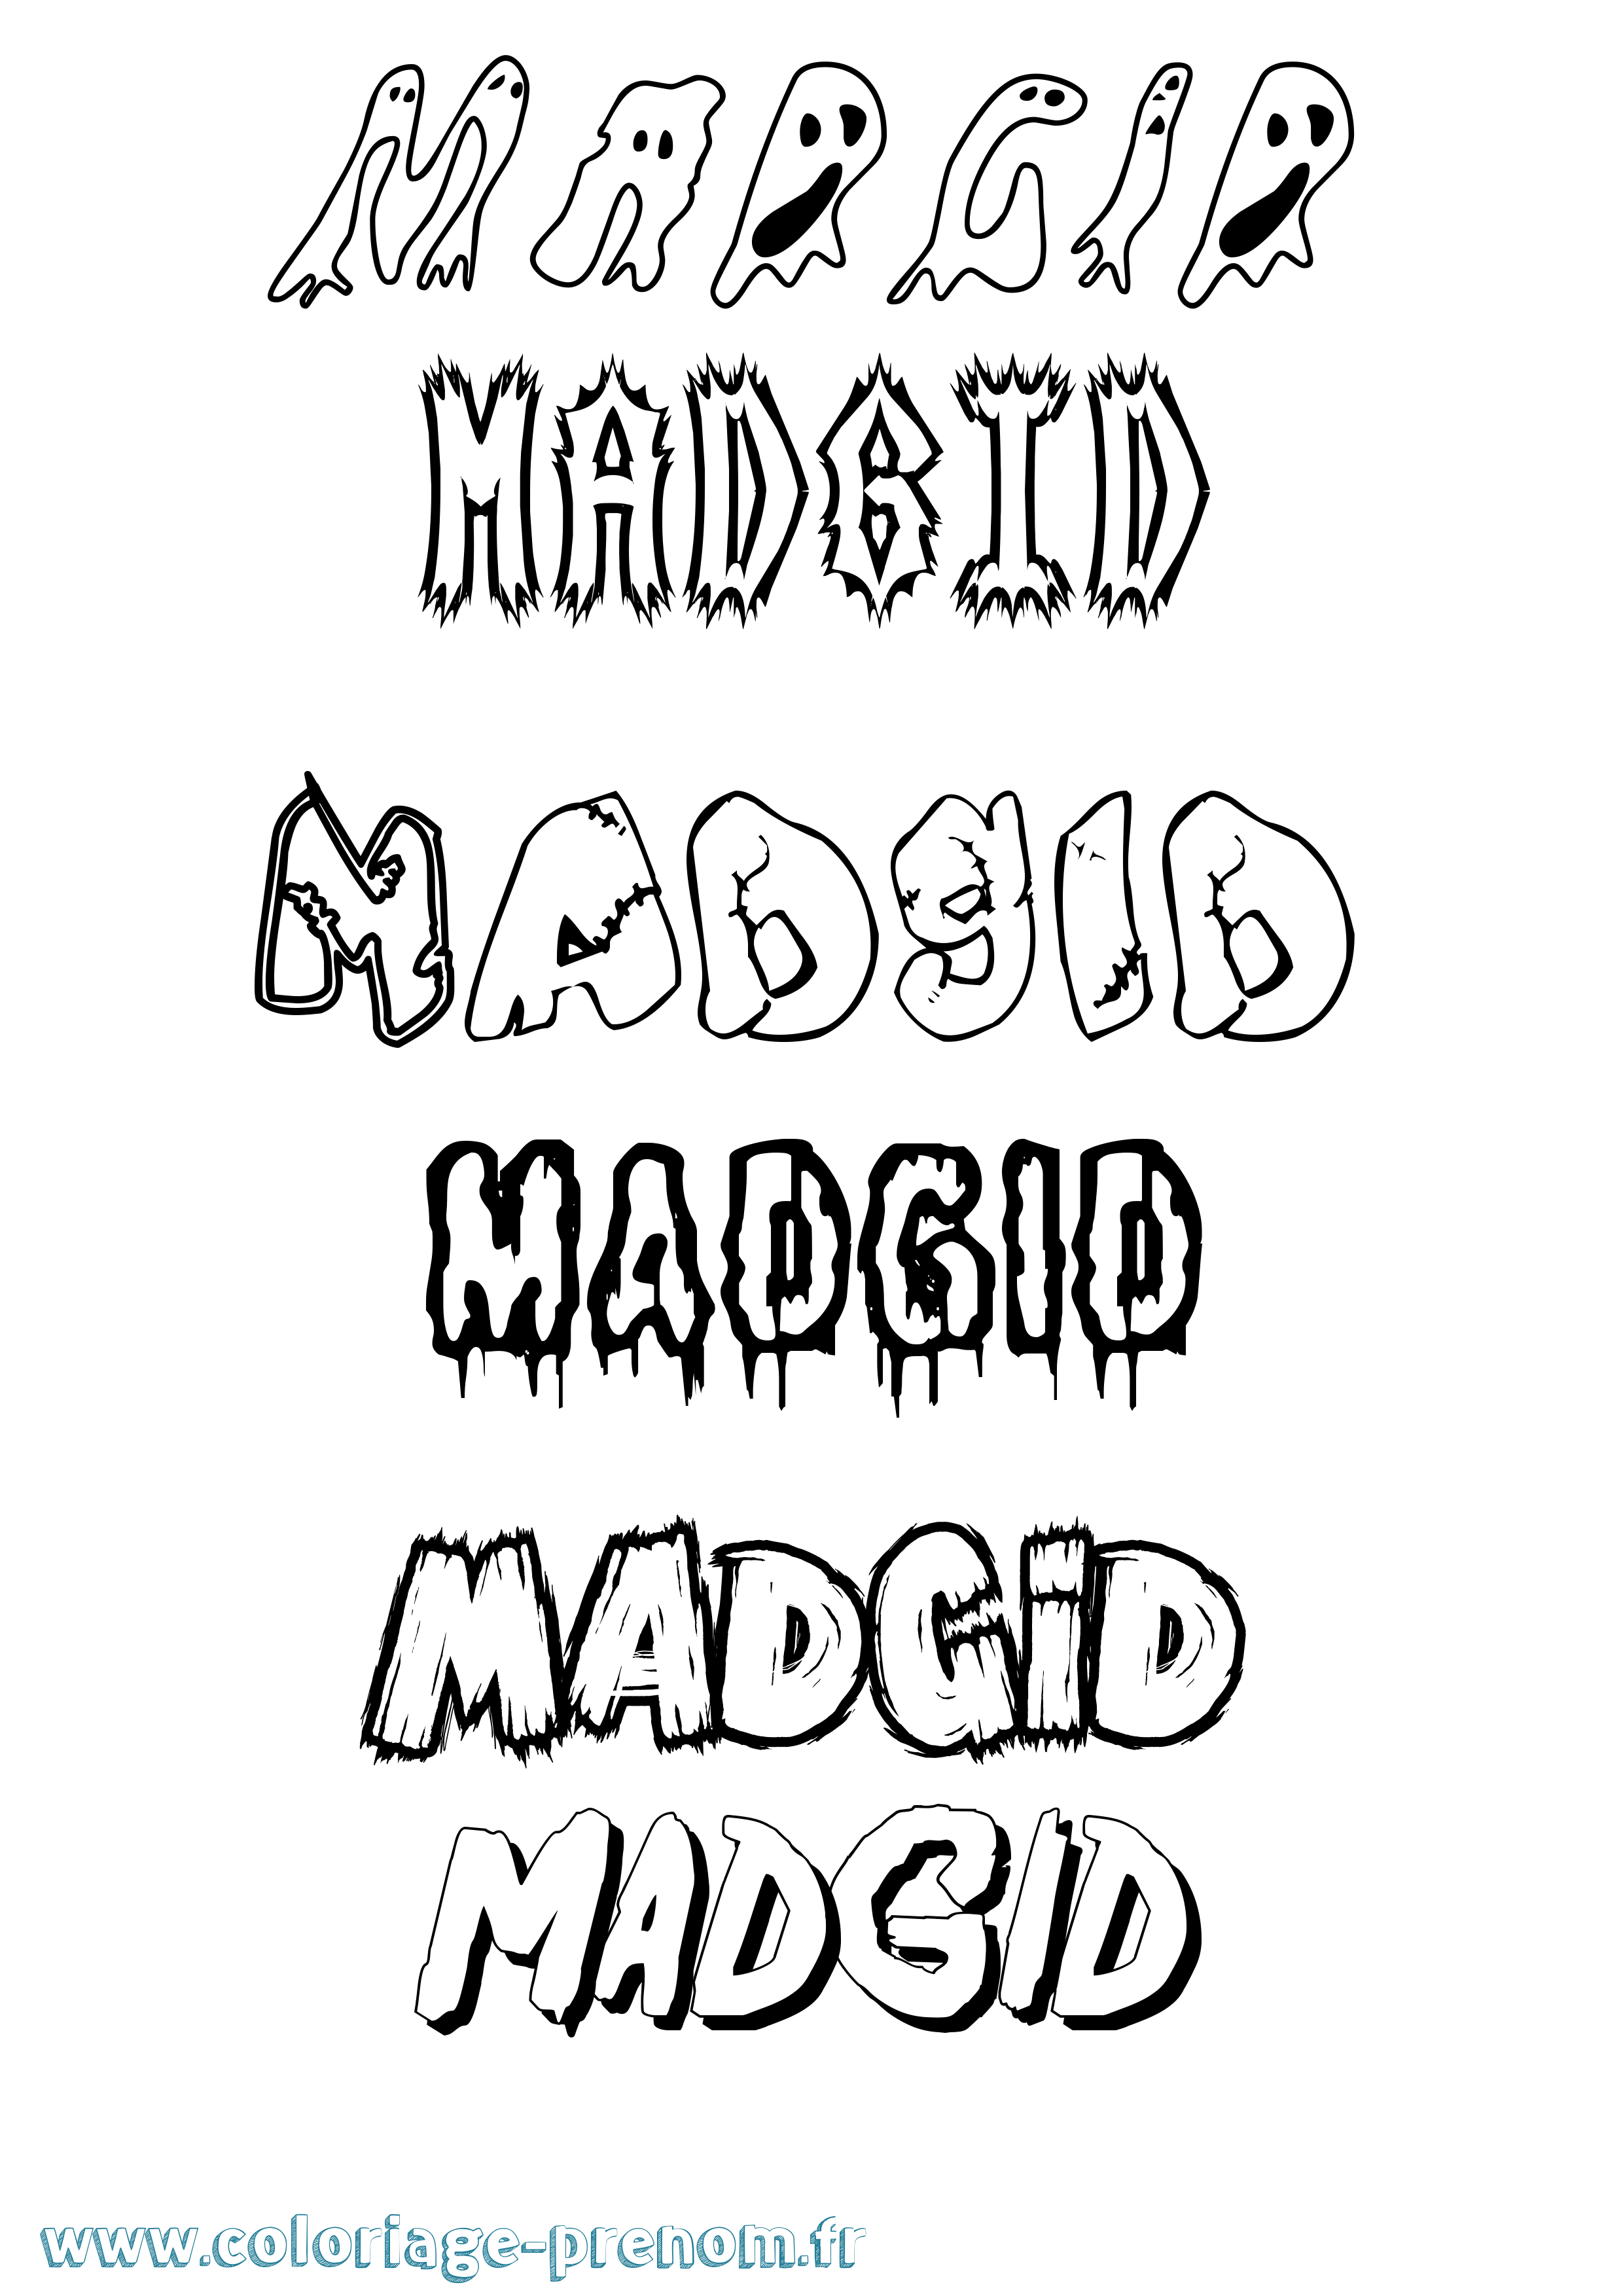 Coloriage prénom Madgid Frisson